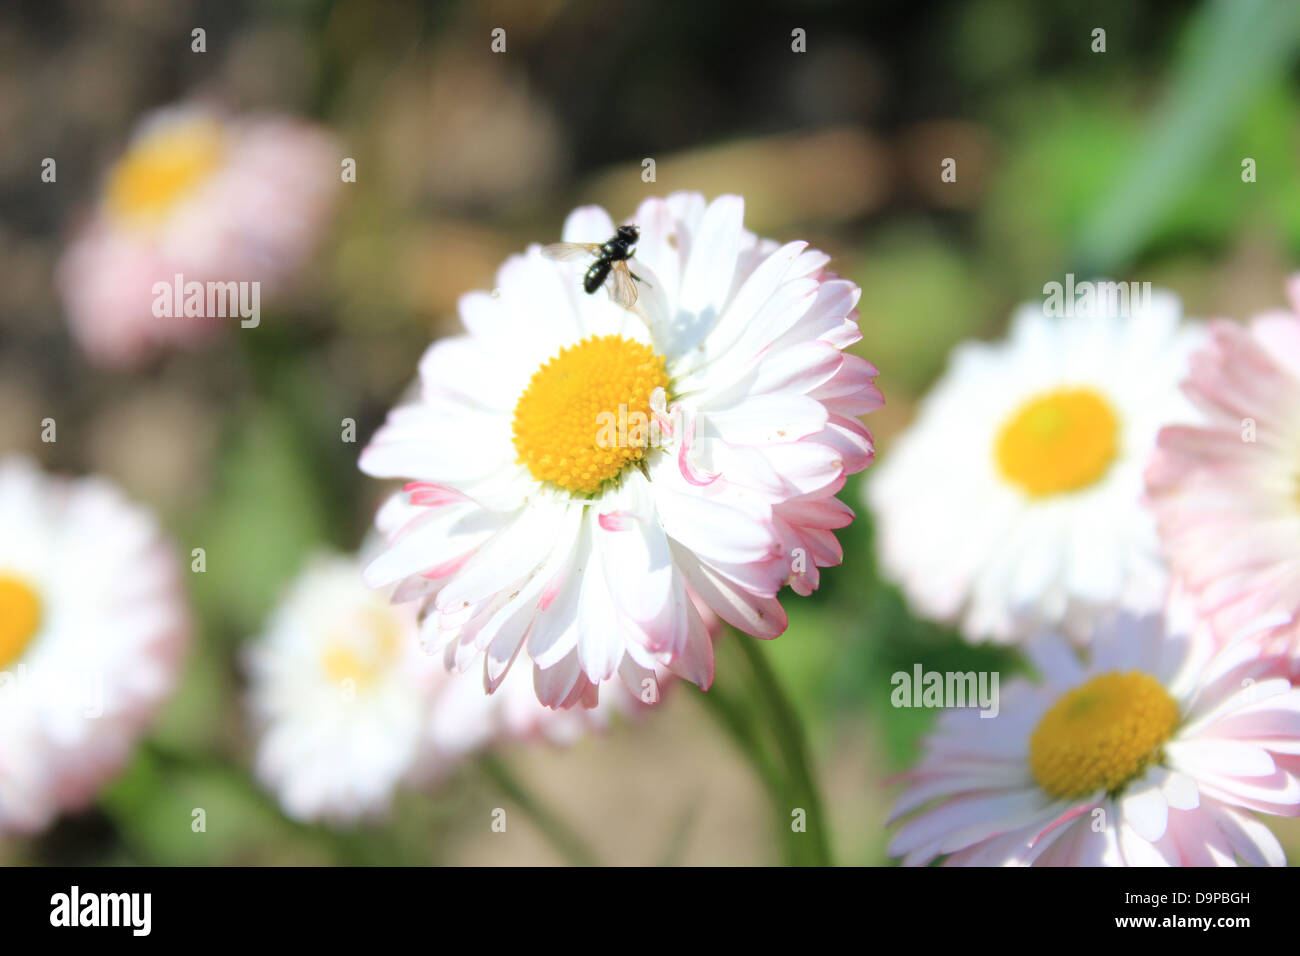 Poco mosca en las hermosas flores de Daisy Foto de stock